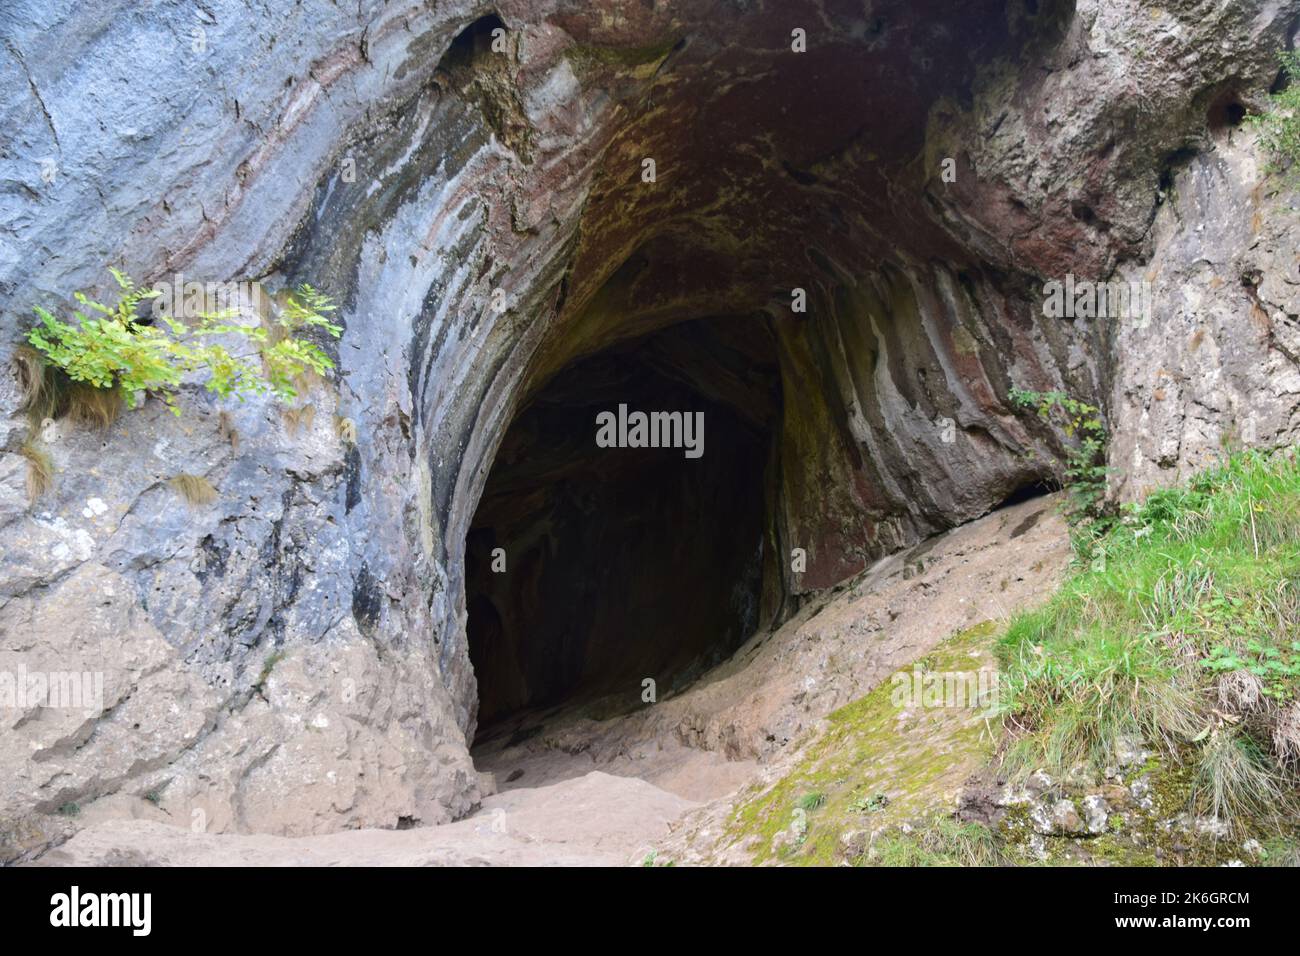 Face à la vallée de la manifold du district de pic sont une série de grottes formées il y a environ 300 millions d'années, la grotte de Thor étant la plus grande. Banque D'Images